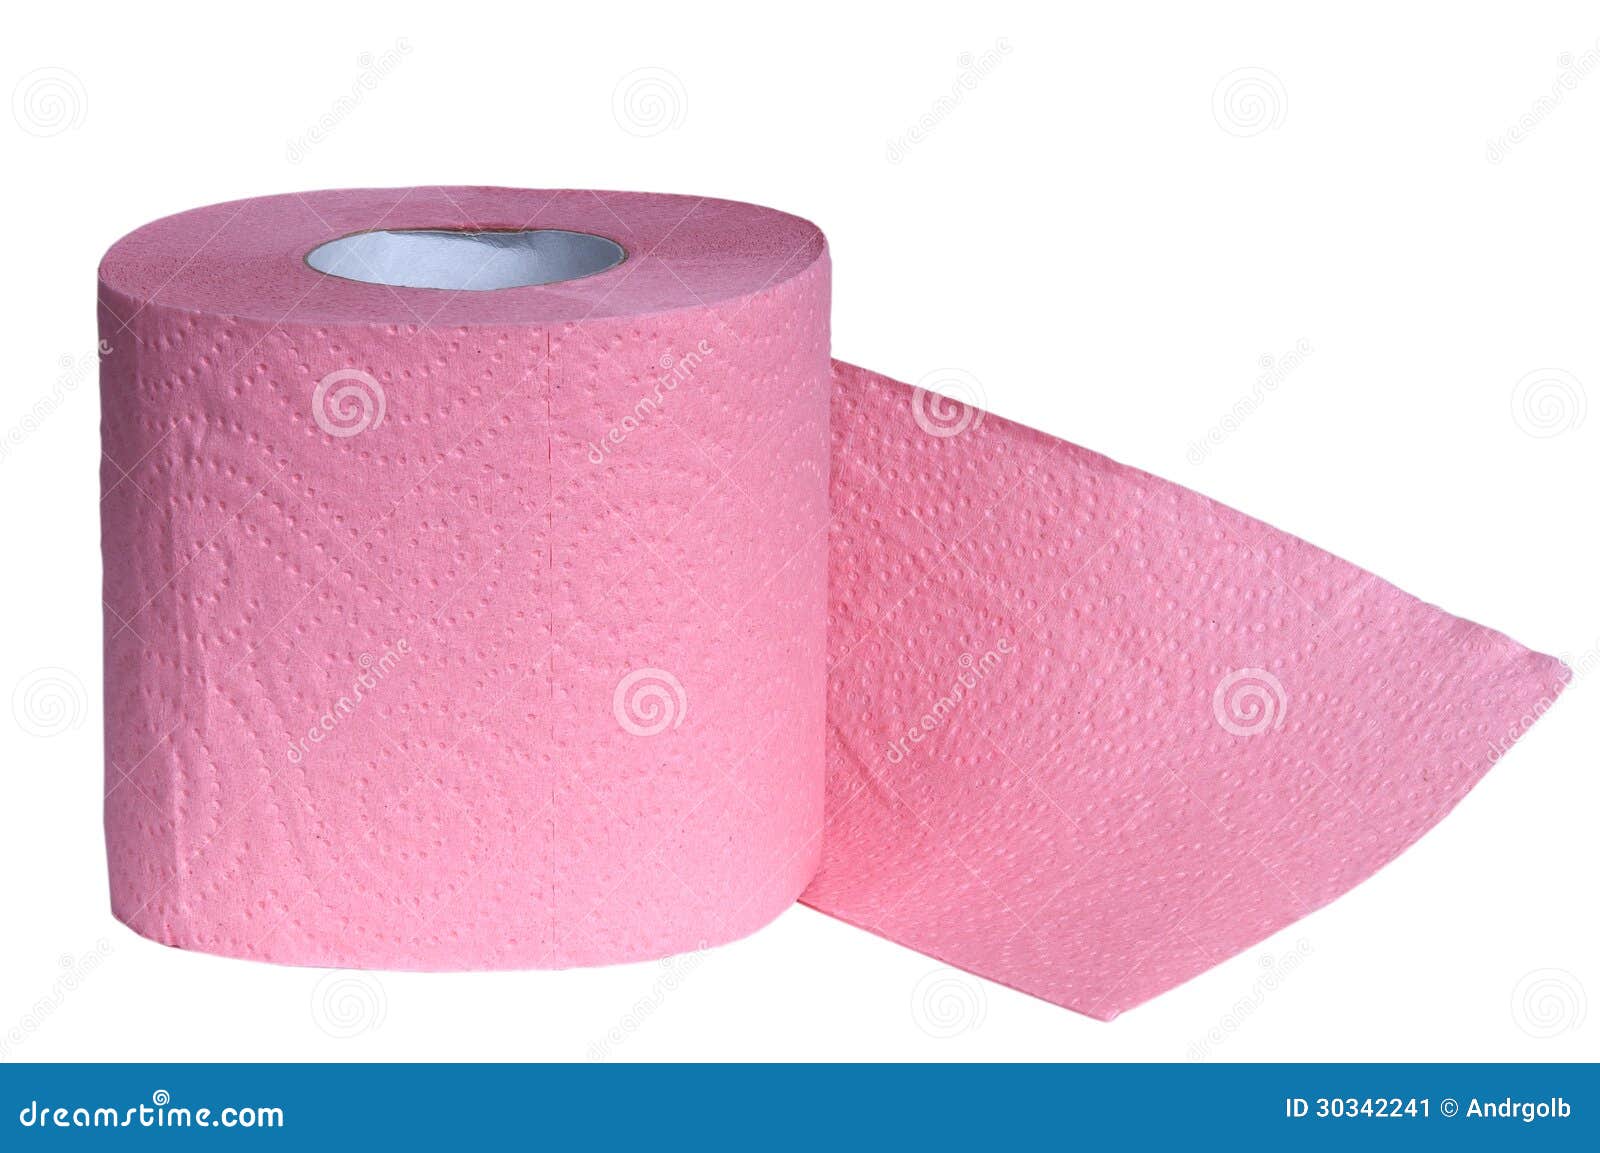 Розовая туалетная бумага. Ярко розовая туалетная бумага. Бумажные полотенца розовые. Туалетная бумага from розовый.